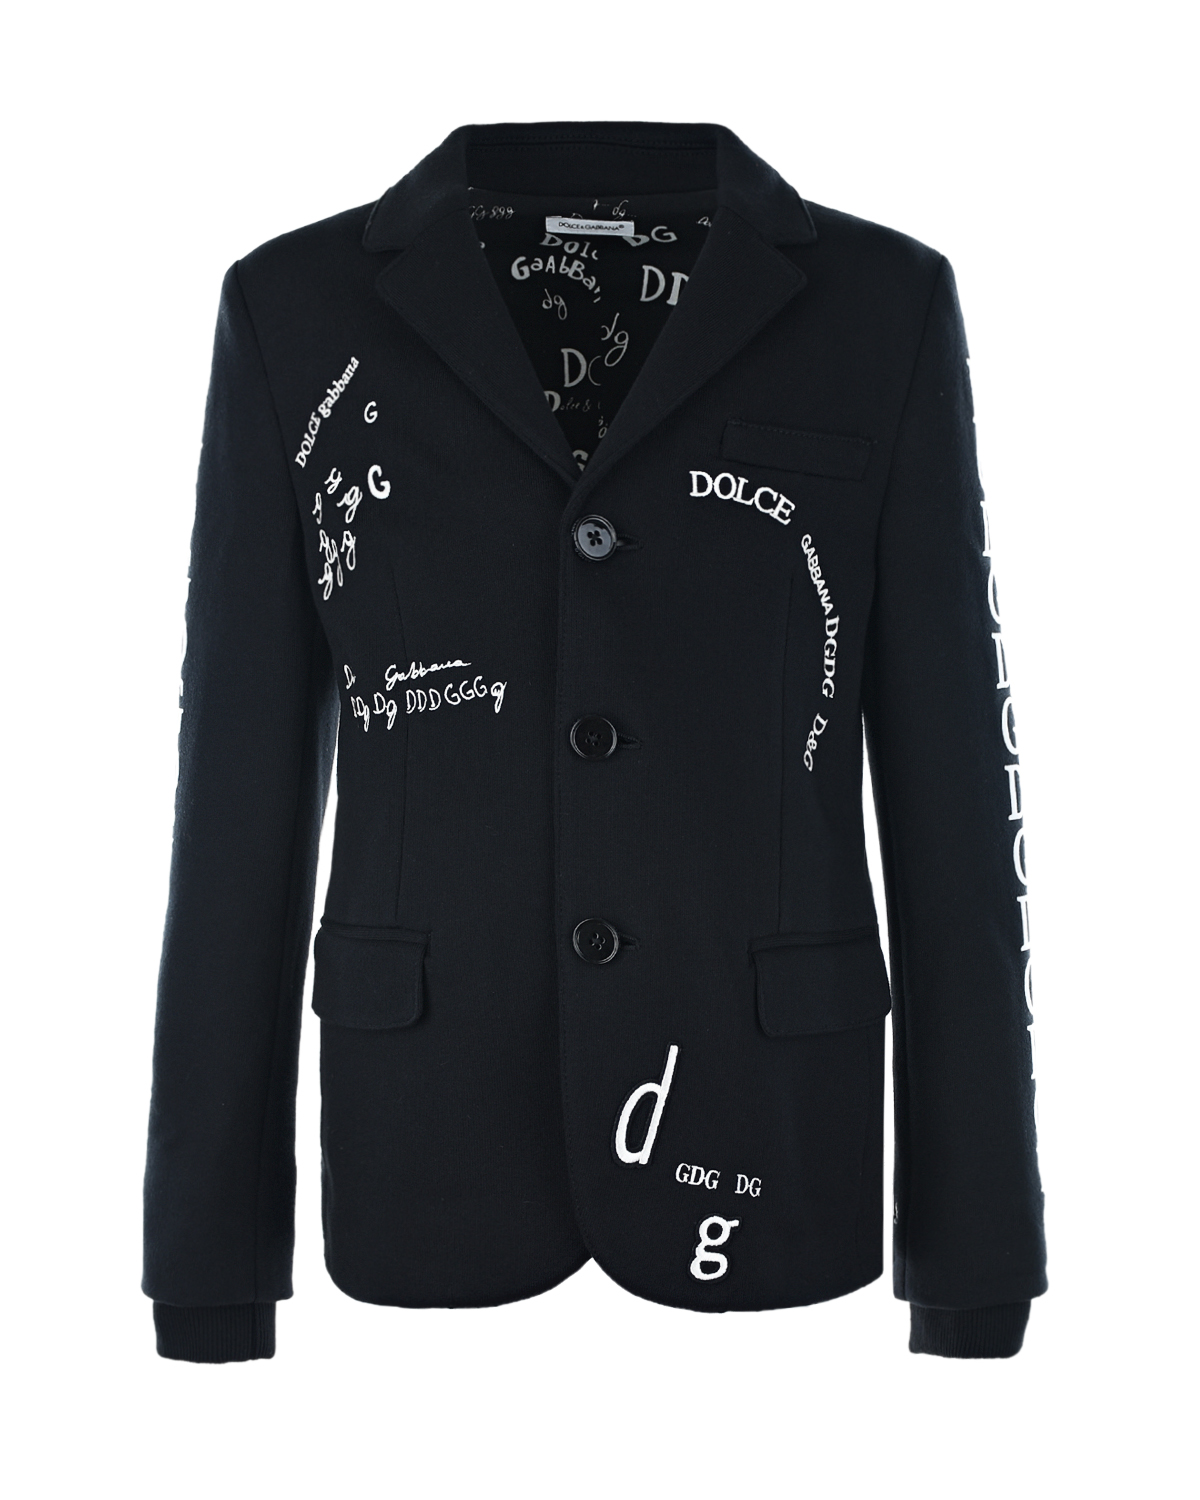 Однобортный пиджак из джерси с вышитым логотипом Dolce&Gabbana детский, размер 116, цвет черный - фото 1